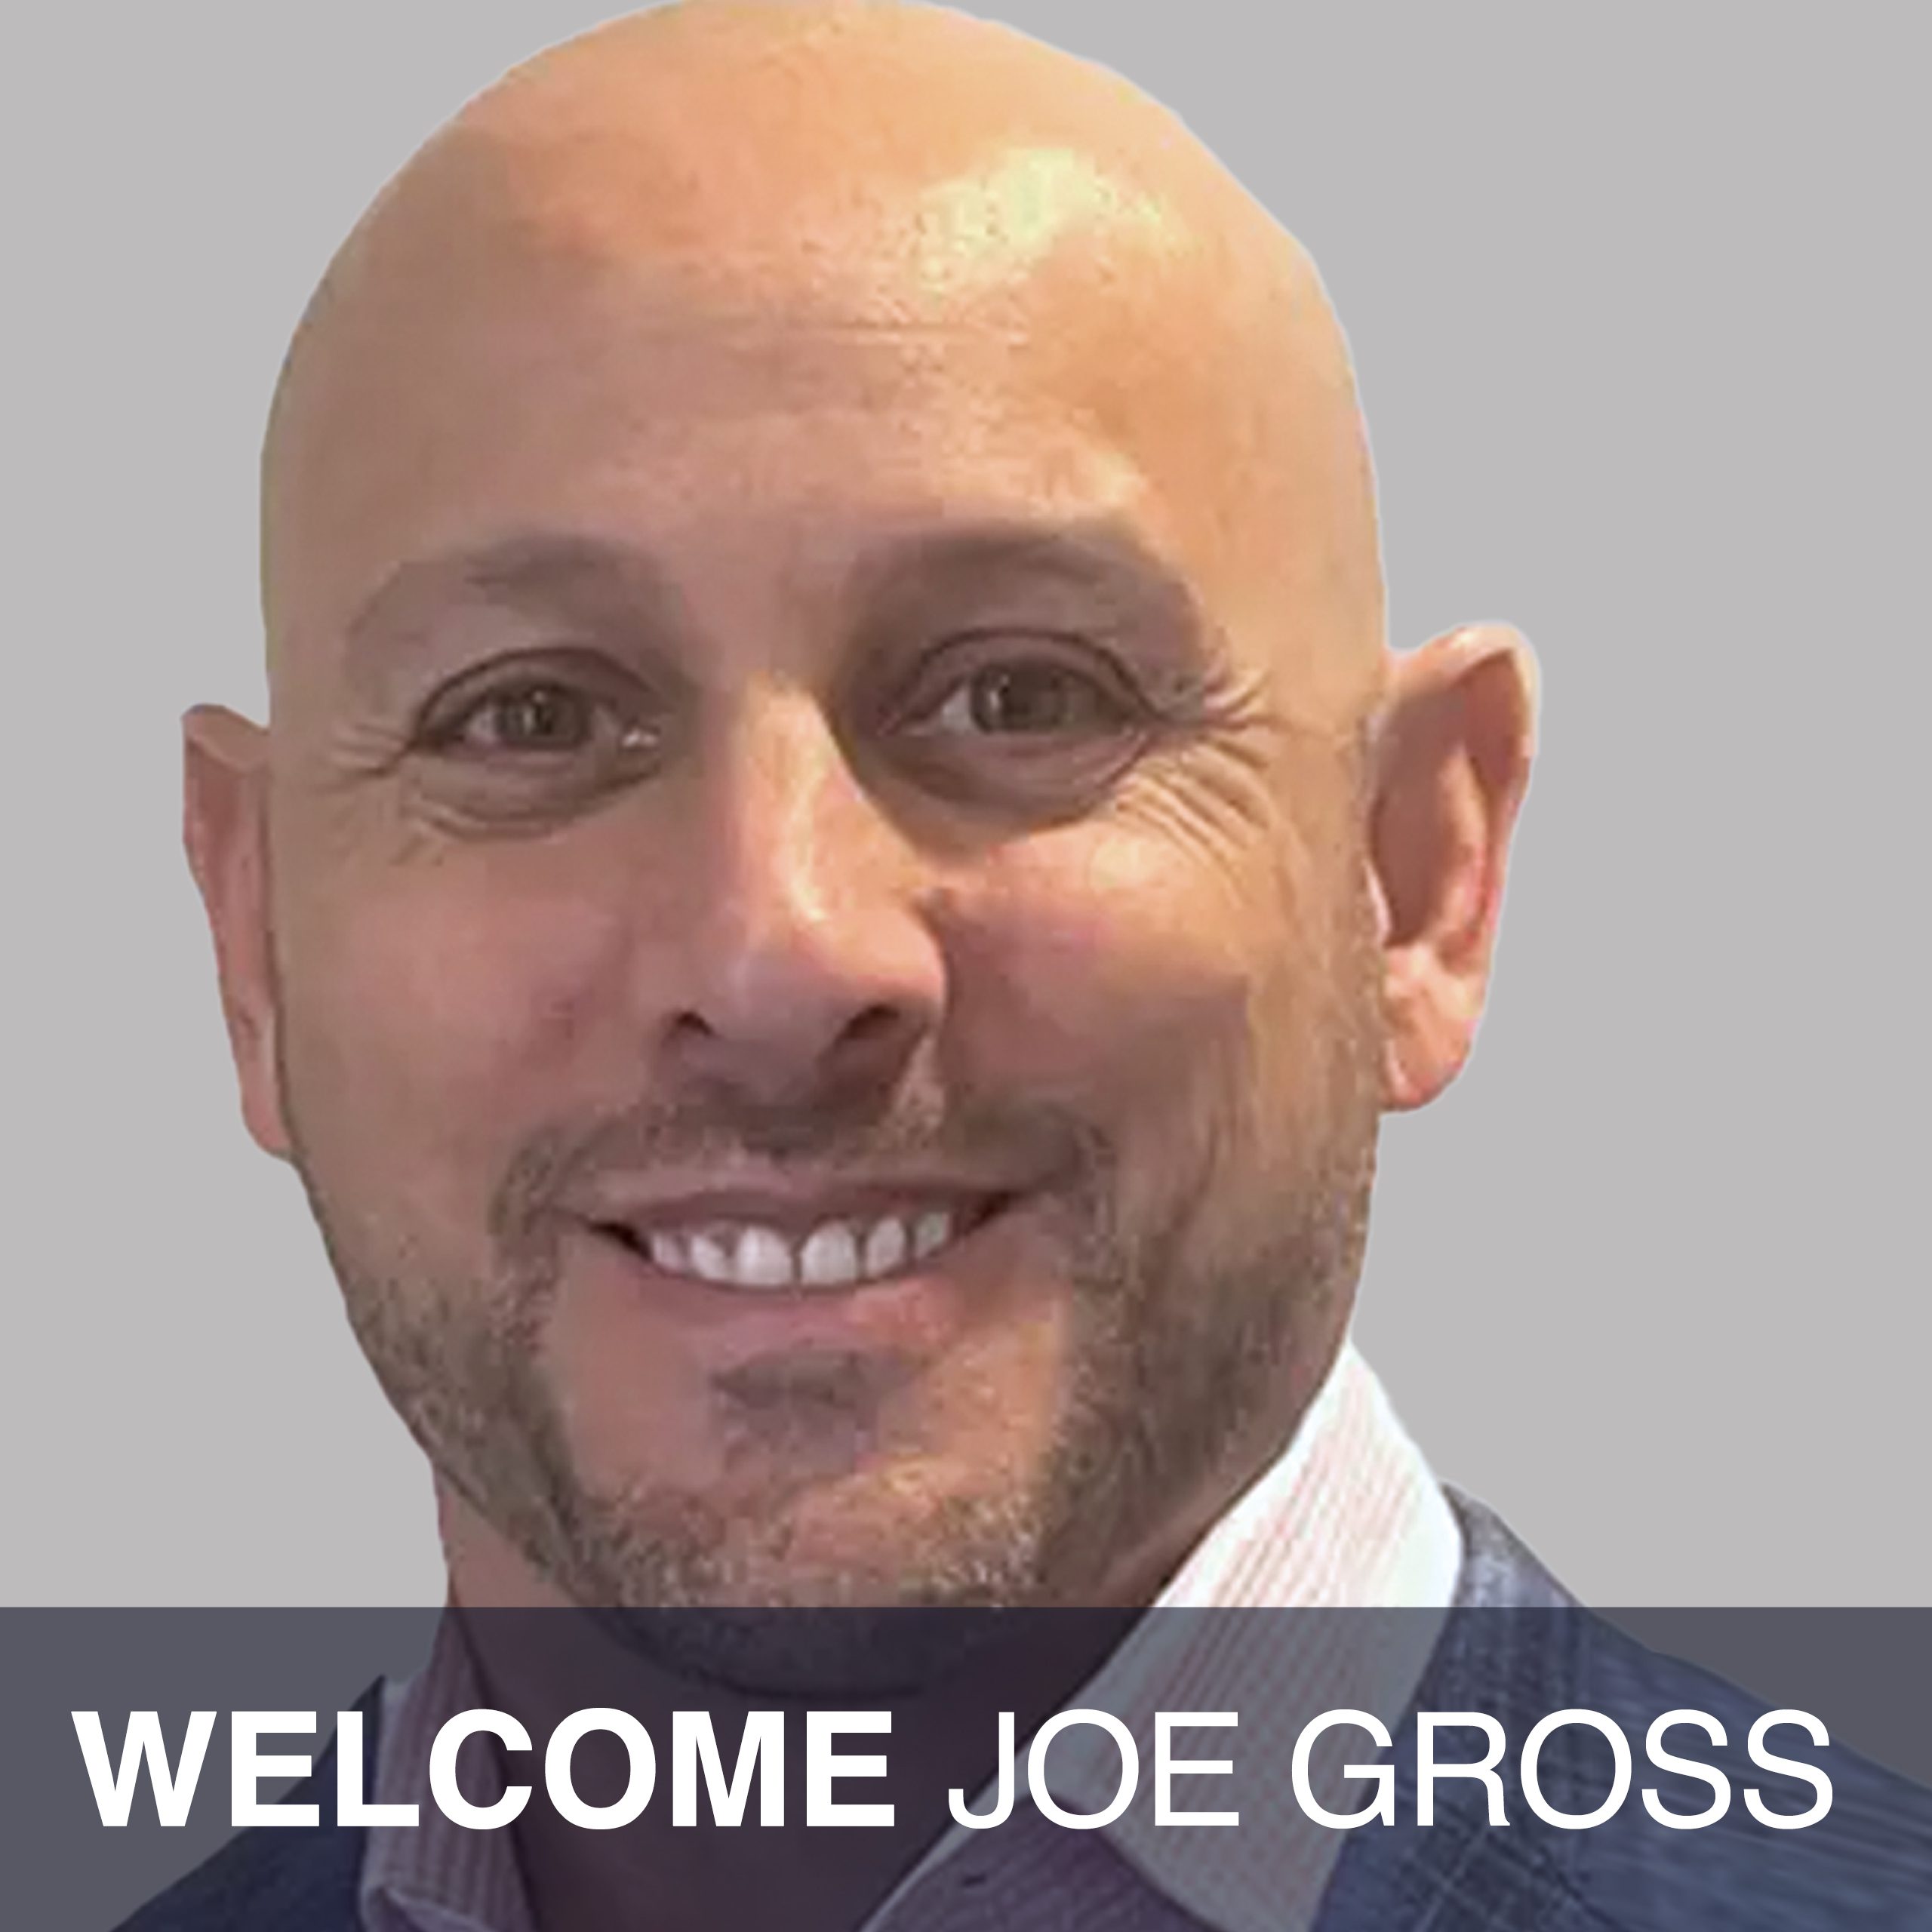 Joe Gross